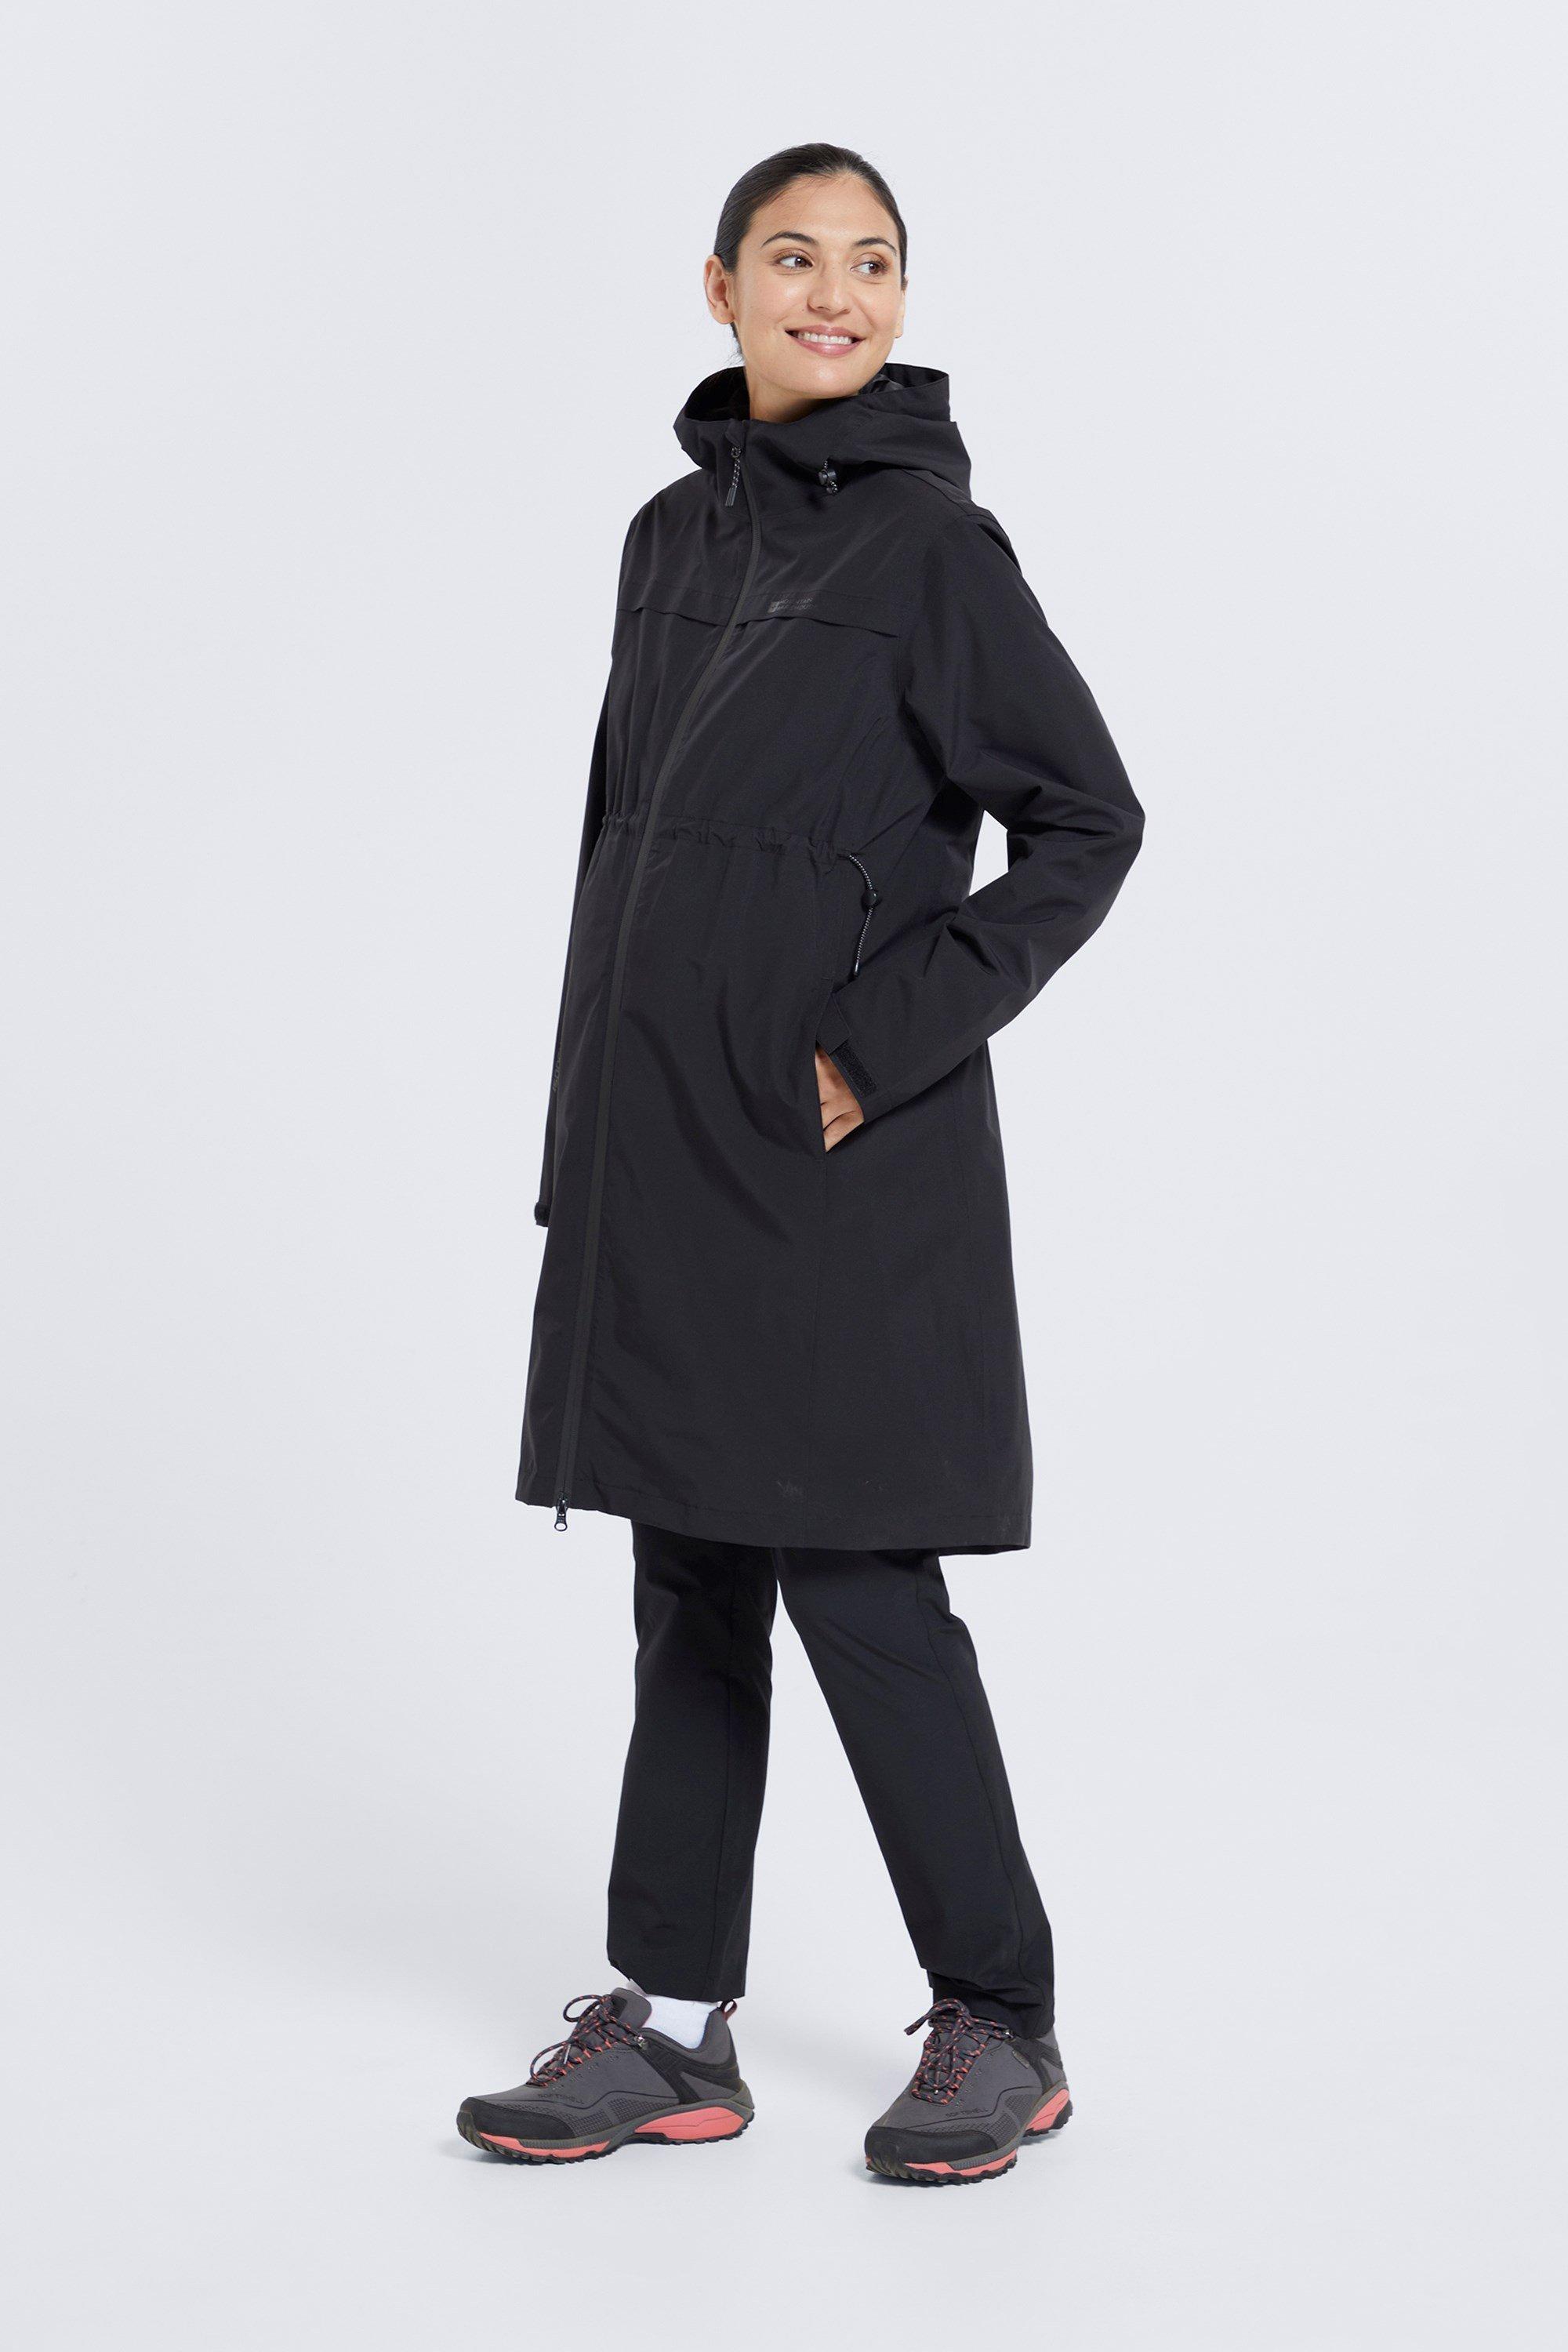 Куртка для беременных Hilltop Легкое теплое пальто Mountain Warehouse, черный